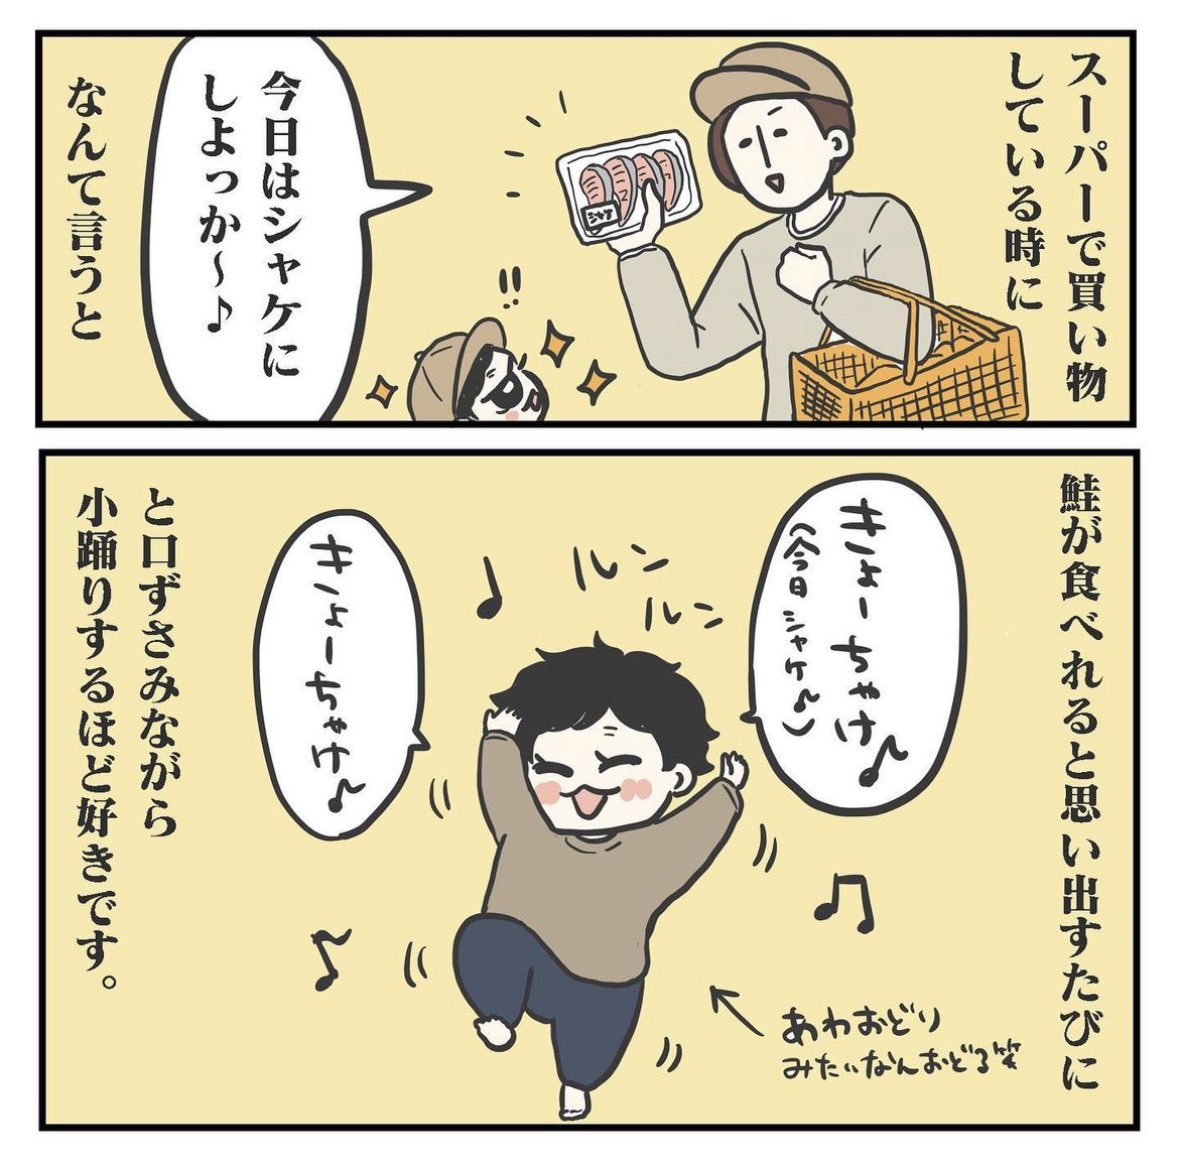 君が好きだと叫びたい(1/3)

#育児漫画 